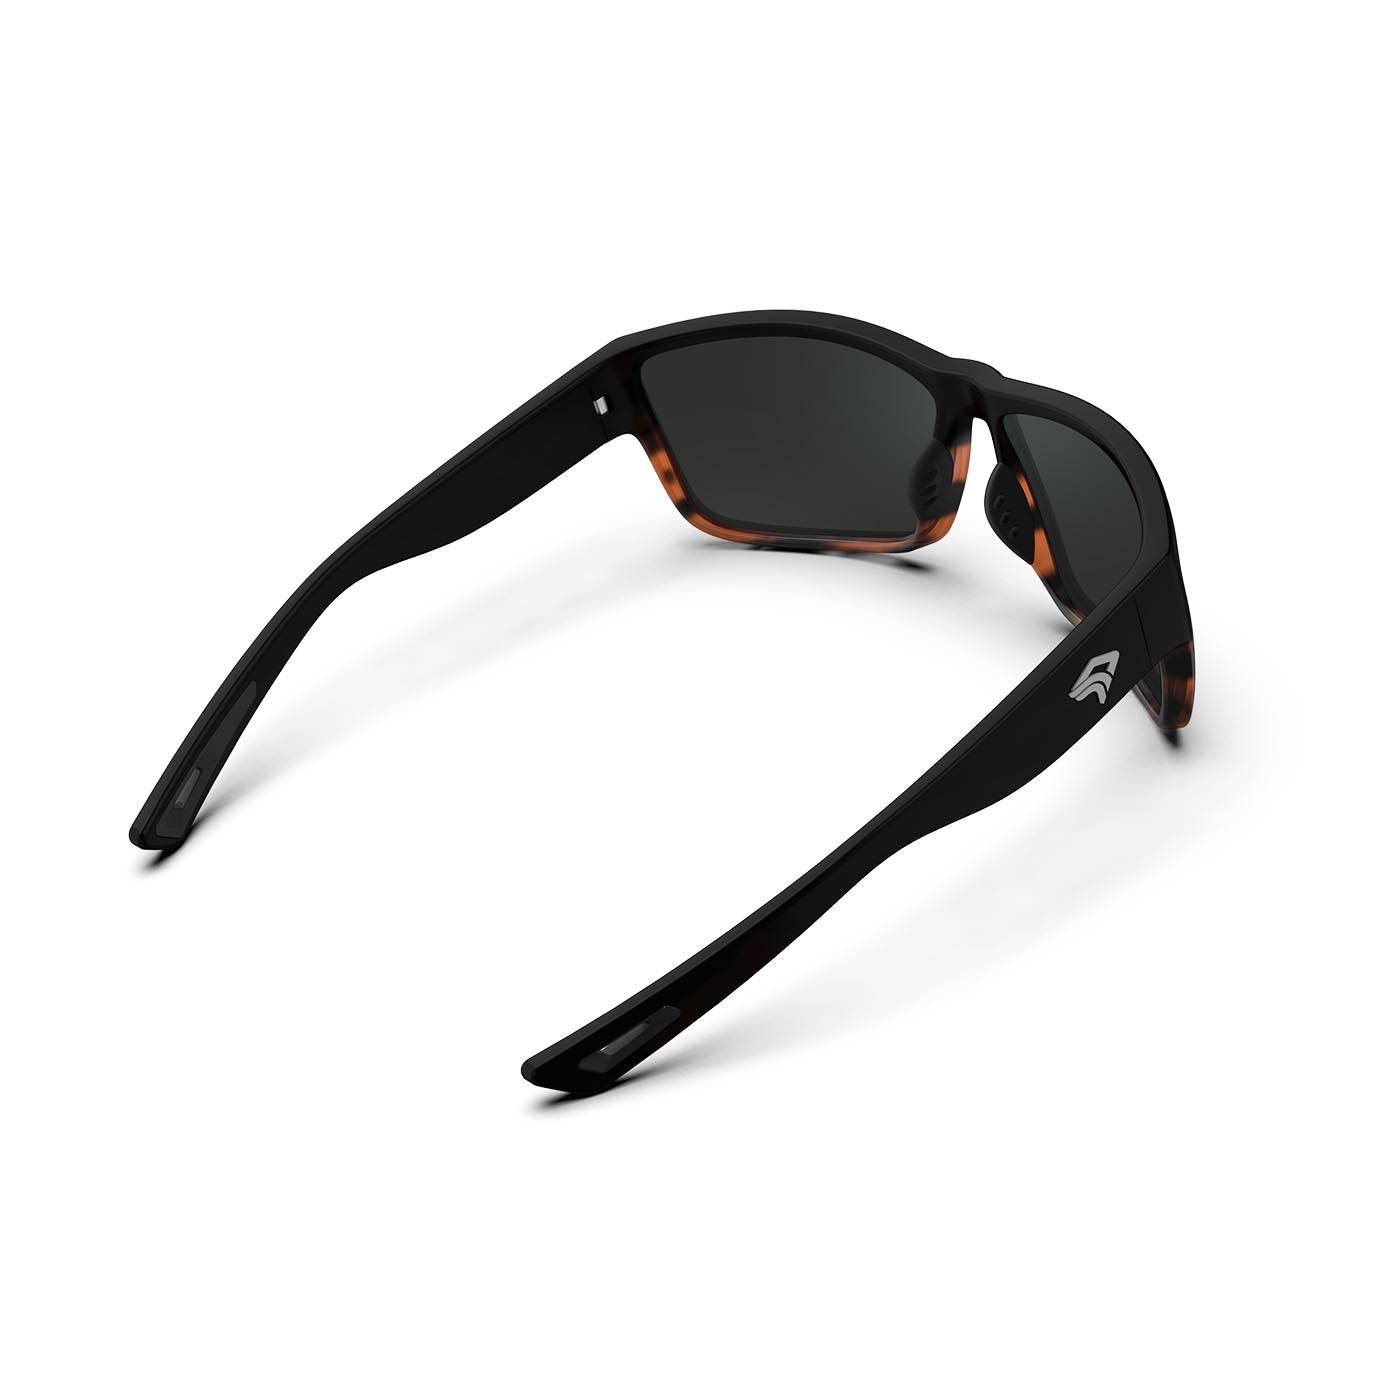 Cratos Series Sunglasses